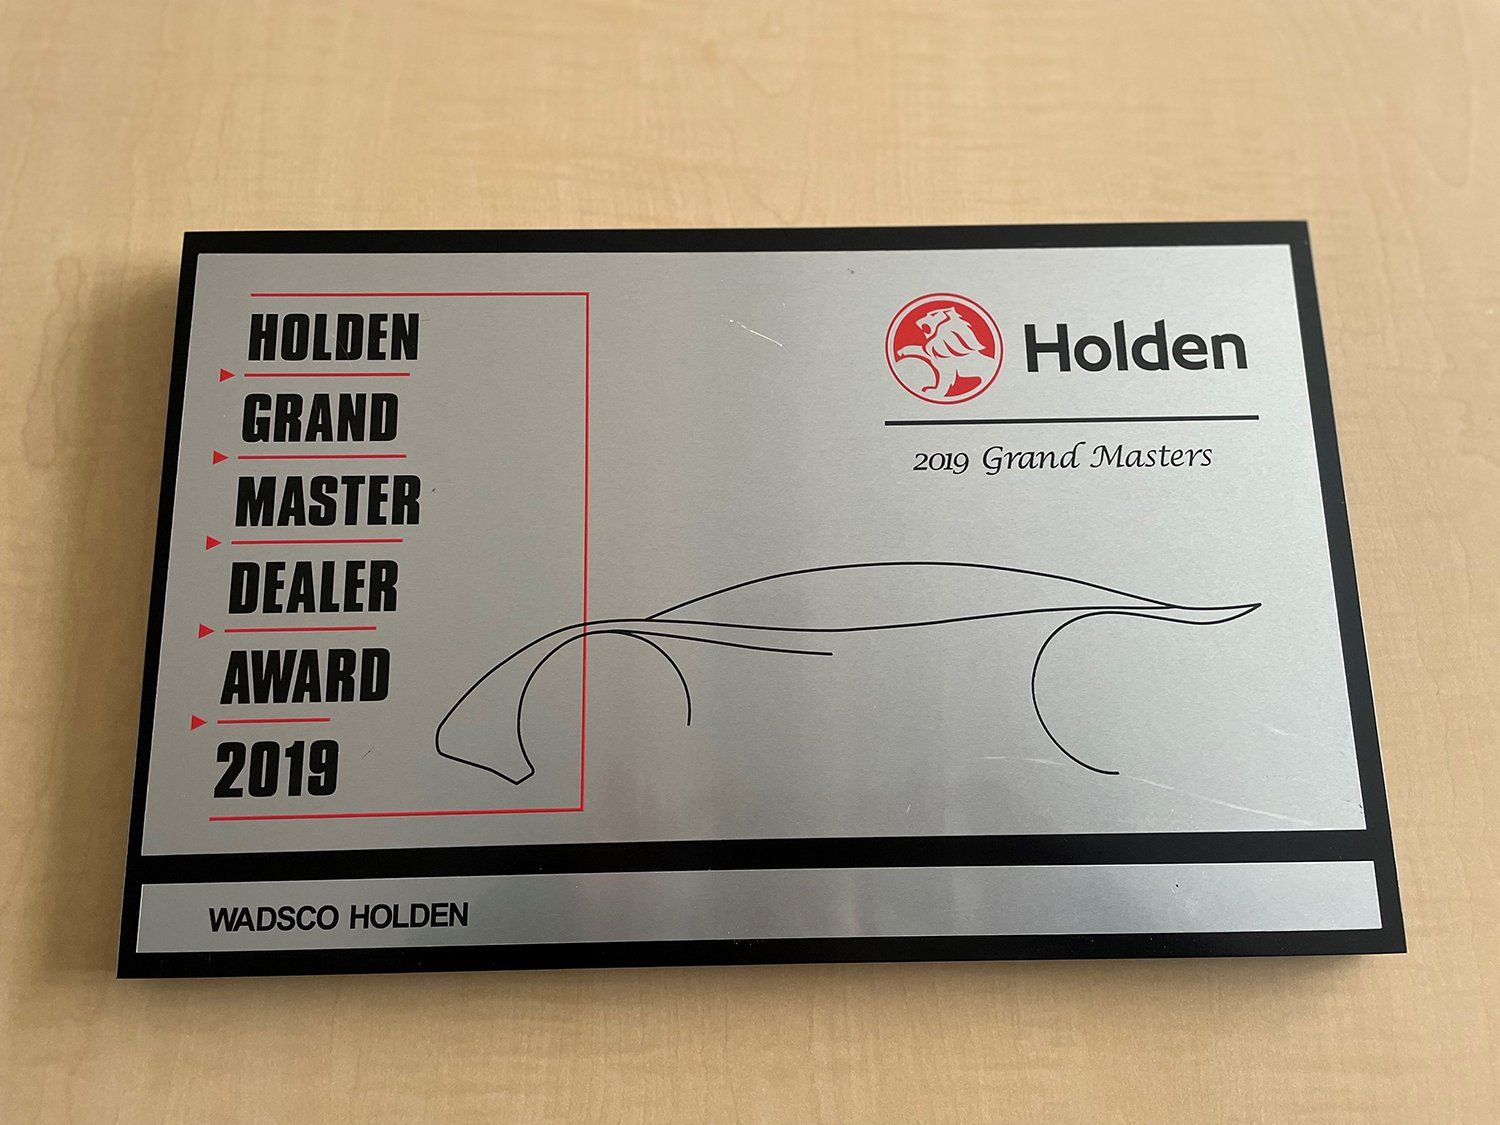 Wadsco Holden wins the 2019 Holden Grand Master Dealer Award